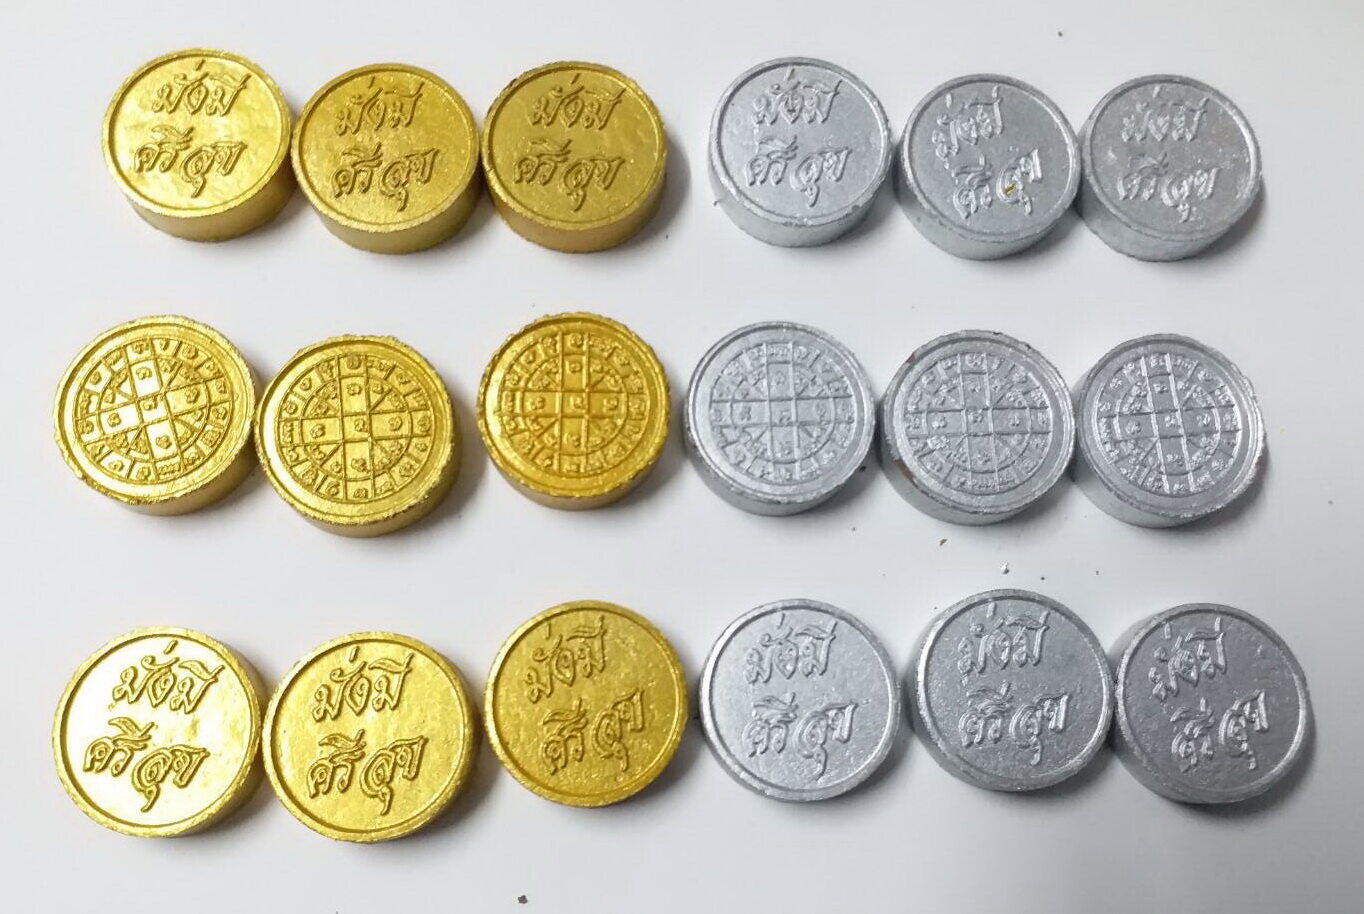 มุมมองเพิ่มเติมของสินค้า เหรียญเงิน เหรียญทอง มวลสาร 9 อย่าง ลงเสาเอก เสาโท เหรียญเงิน 9 เหรียญ + เหรียญทอง 9 เหรียญ(แถมเหรียญเงินเหรียญทองอย่างละ 1 เหรียญ)